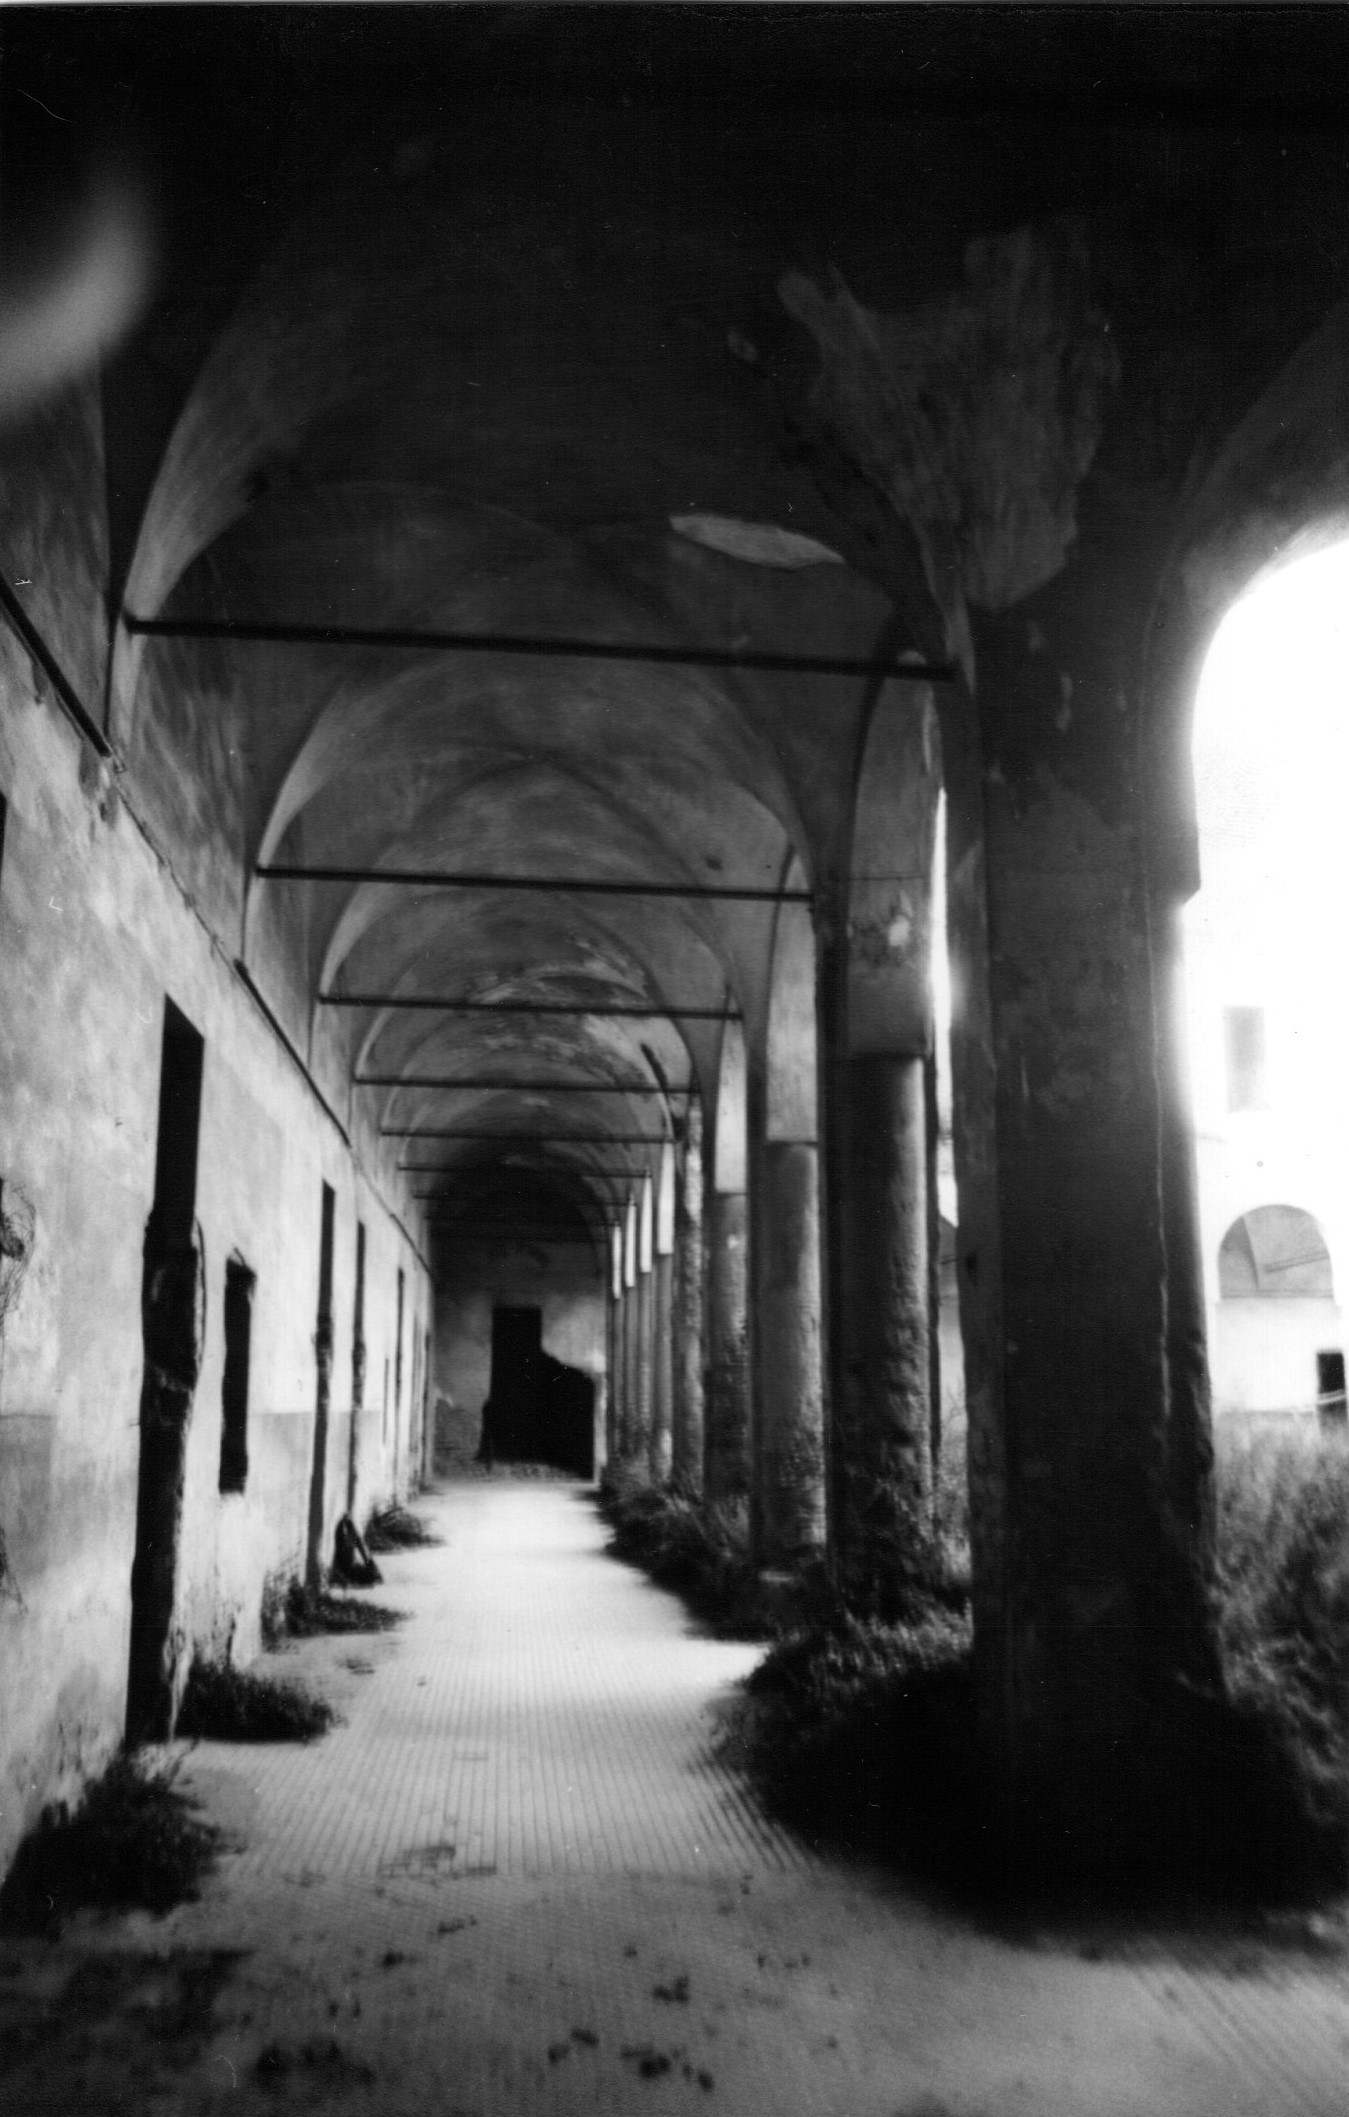 Convento di S. Benedetto, poi Collegio di S. Carlo, e successivamente Caserma "Pagliari" (convento) - Cremona (CR) 